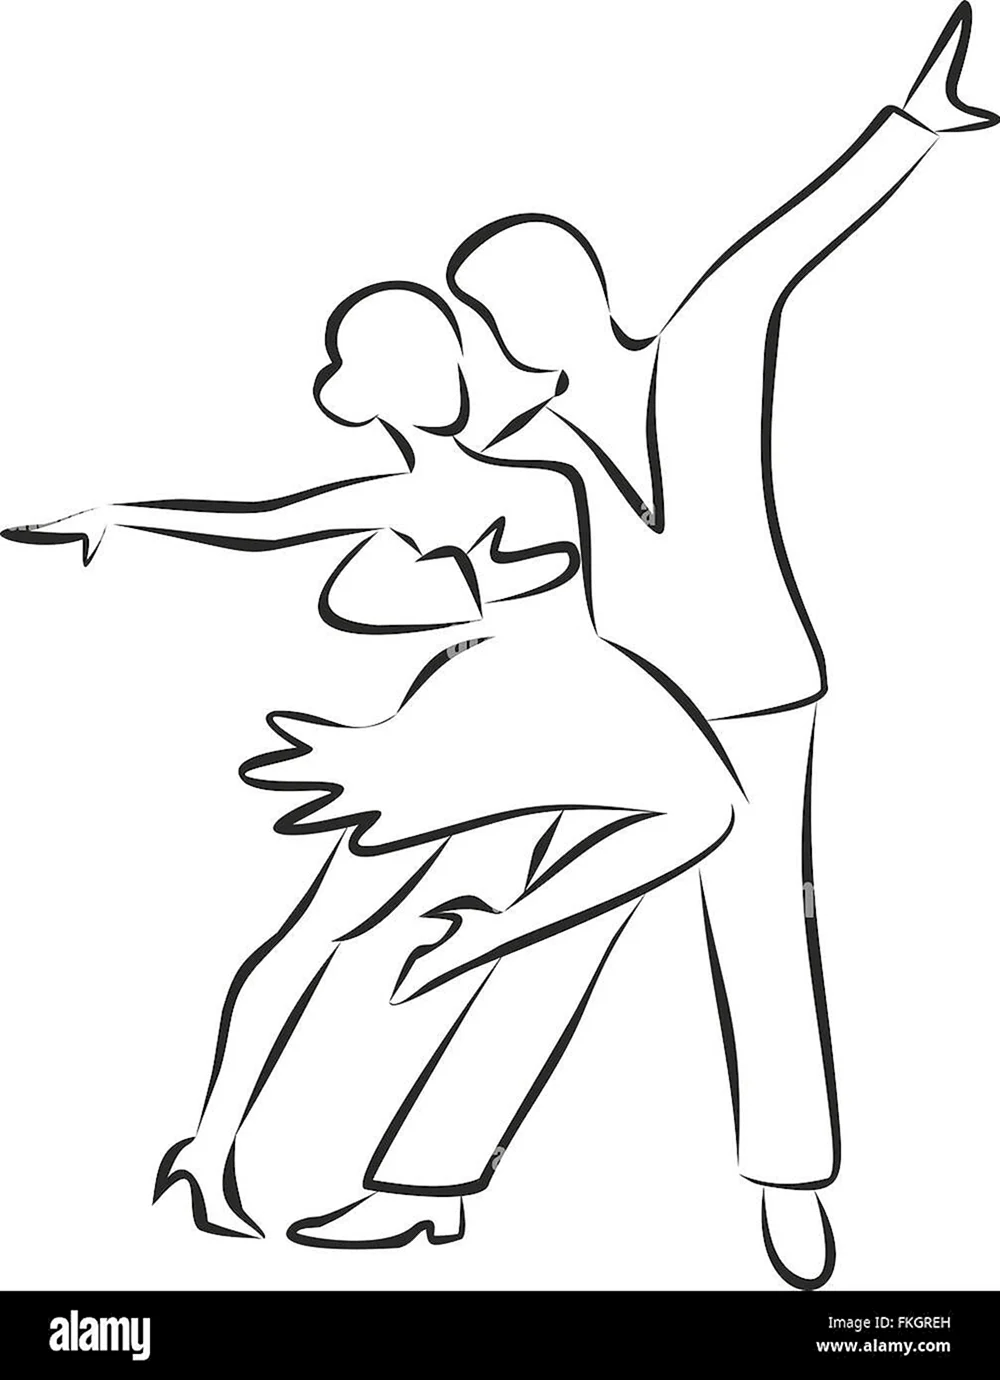 Контур танцующей пары